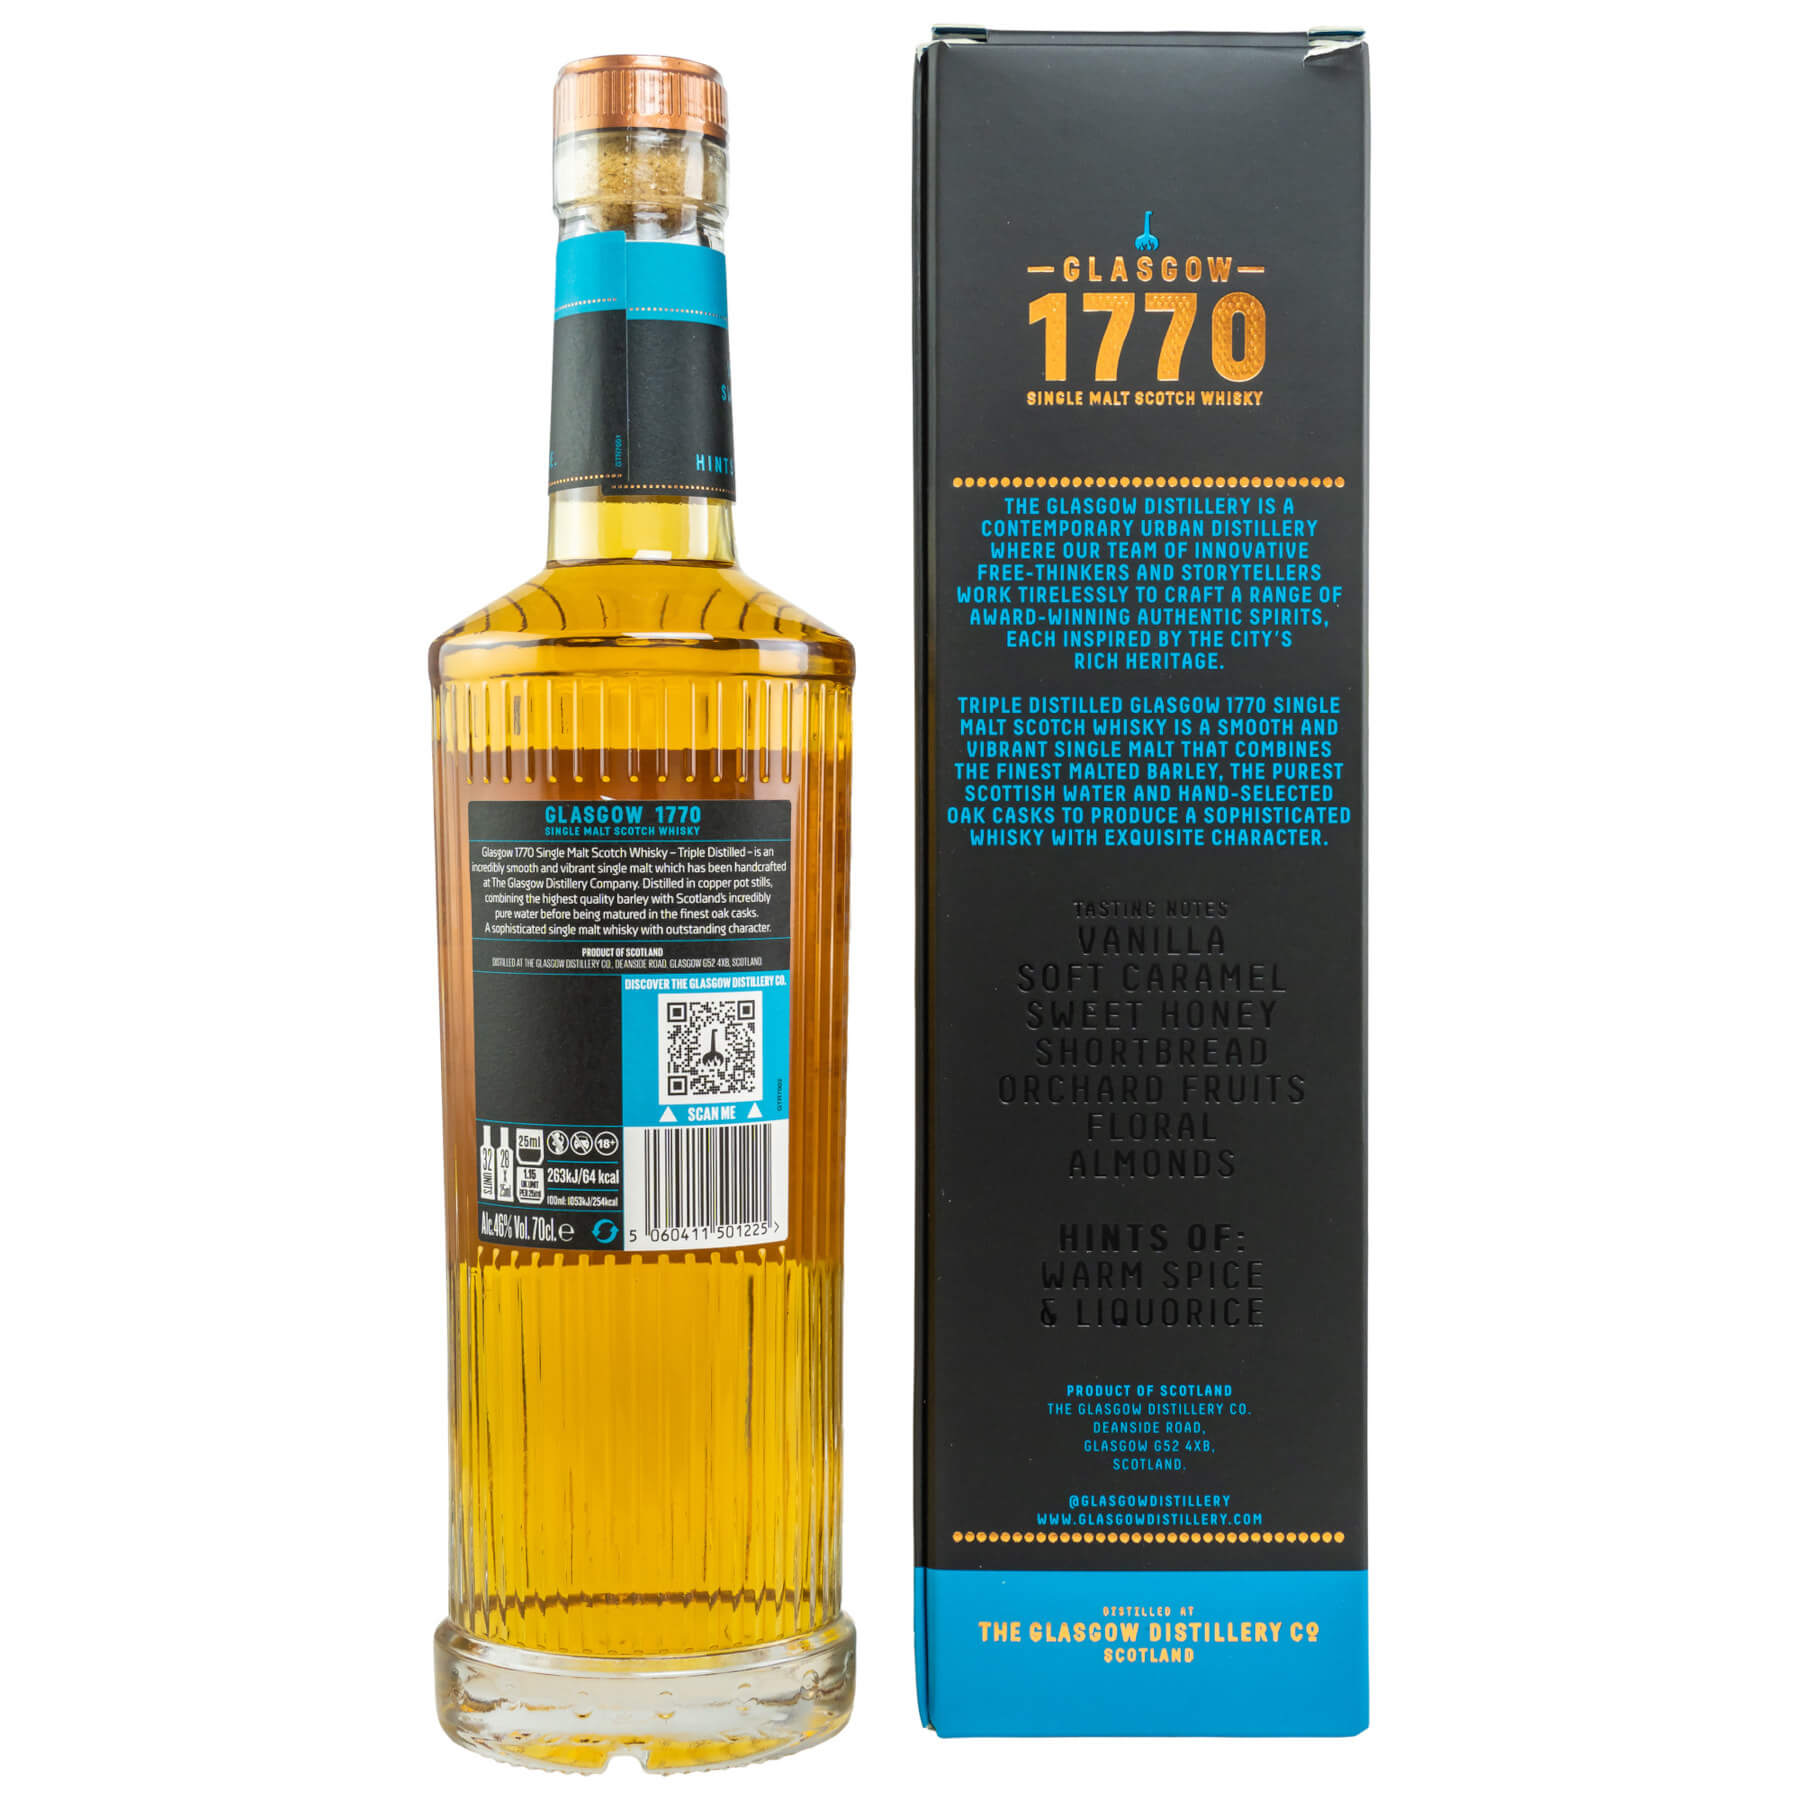 Flasche und Verpackung 1770 Triple Distilled Whisky